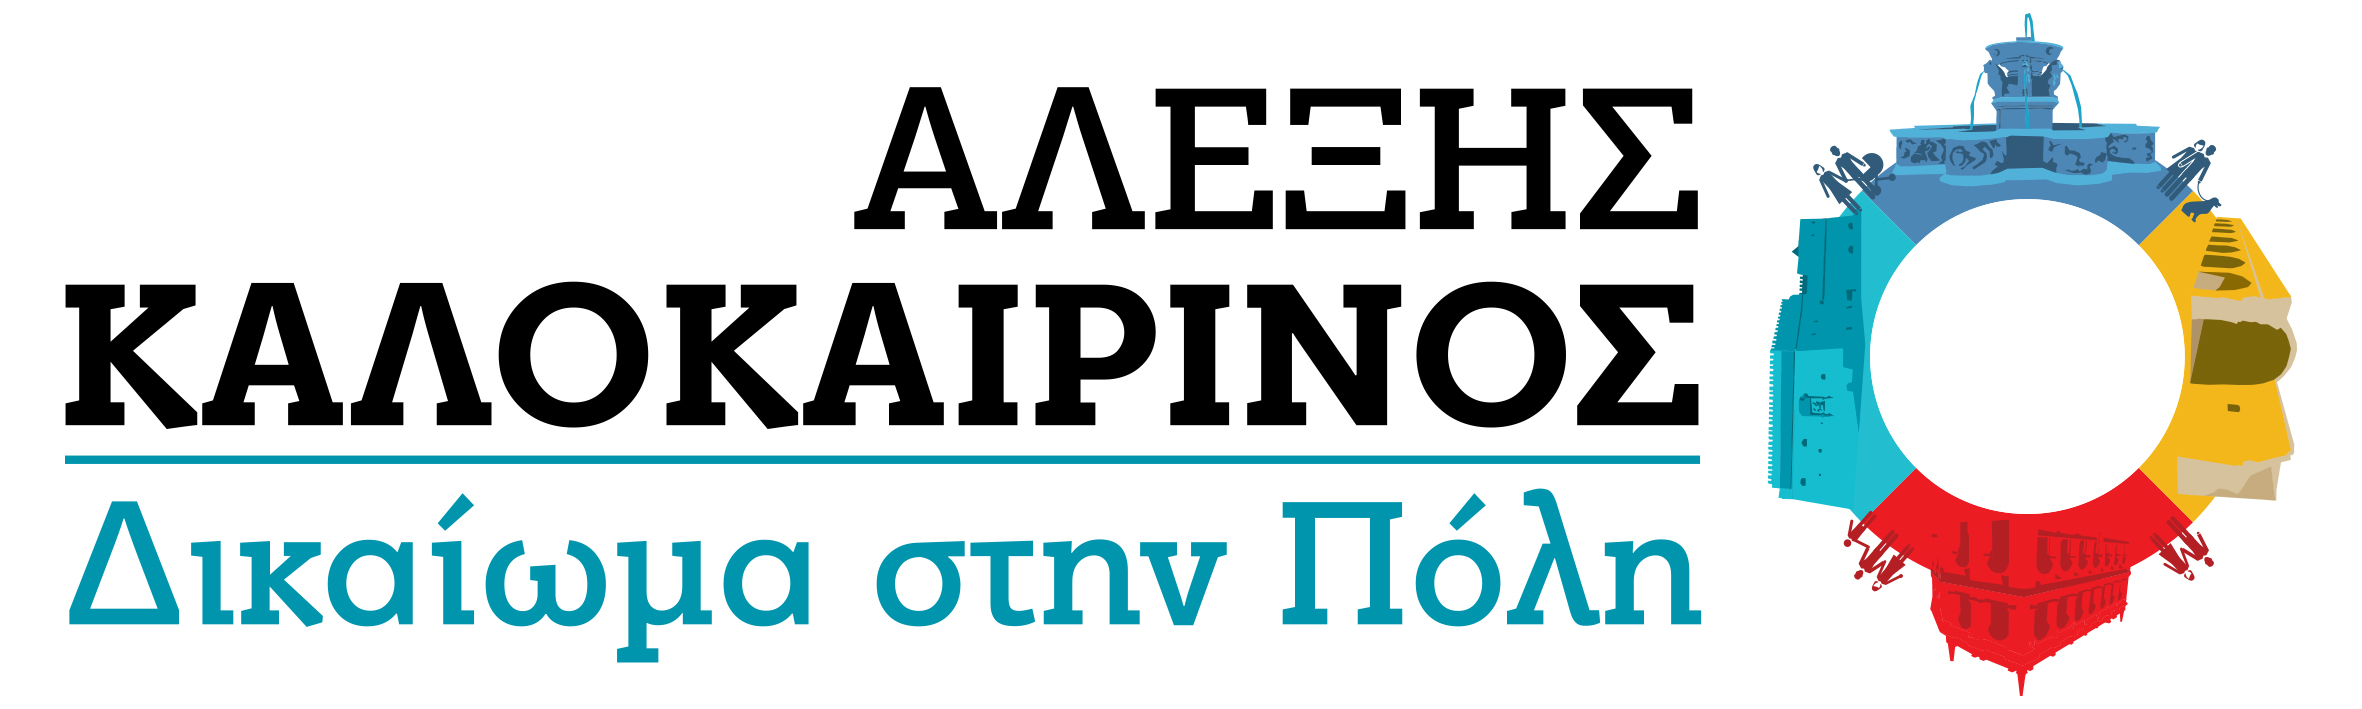 Αλέξης Καλοκαιρινός Δικαίωμα στην Πόλη Ηράκλειο εκλογές 2023 Ηράκλεια Πρωτοβουλία